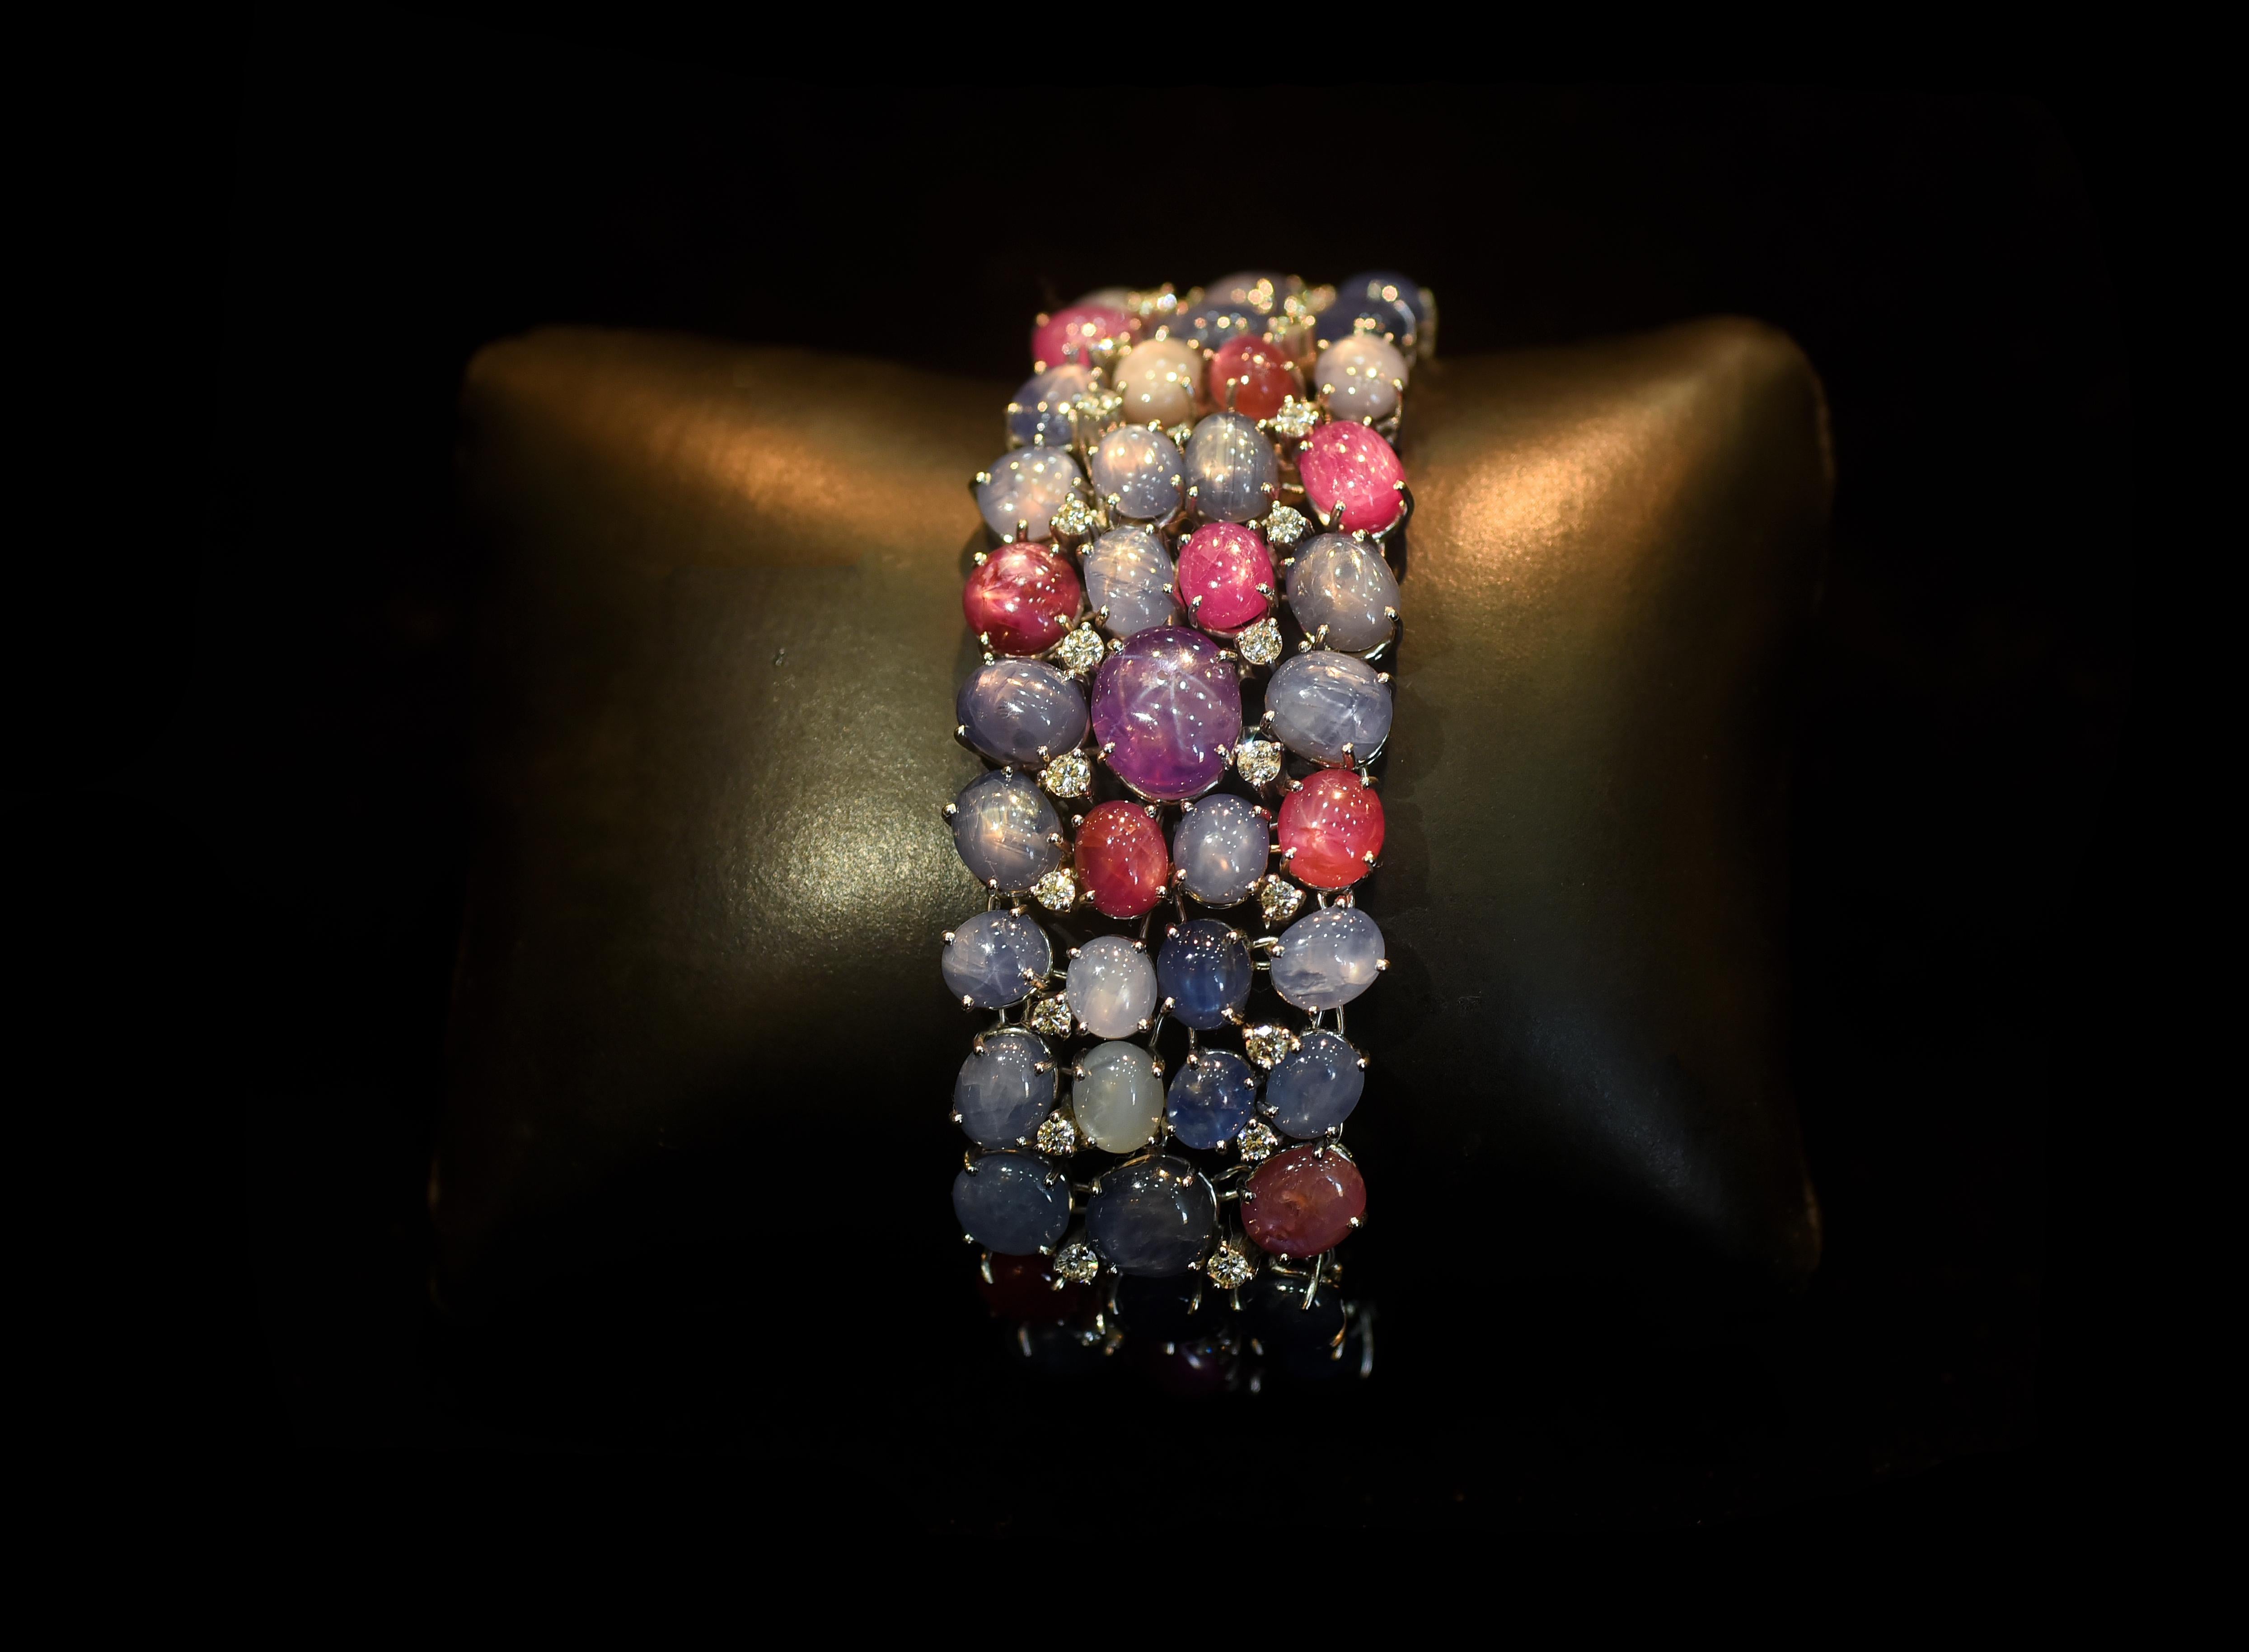 Un magnifique et unique bracelet en saphir étoilé de Ceylan serti en or 18 carats et diamants. Le saphir étoilé est une rareté du saphir qui présente un astérisme rare (une étoile à six rayons) flottant sur la pierre sous un éclairage spécifique. Le